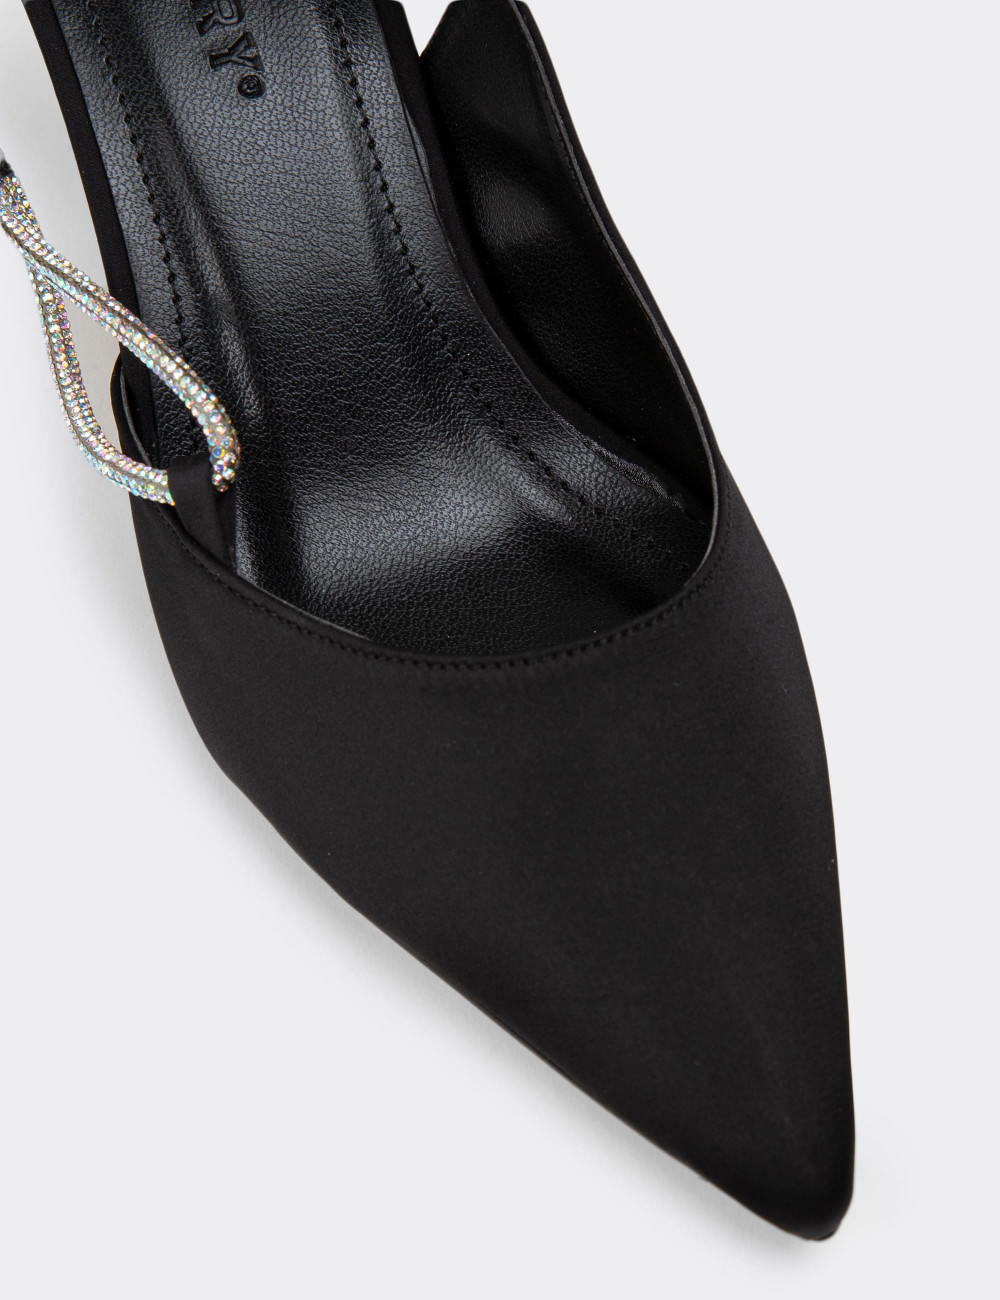 Siyah Topuklu Kadın Ayakkabı - K0609ZSYHM01